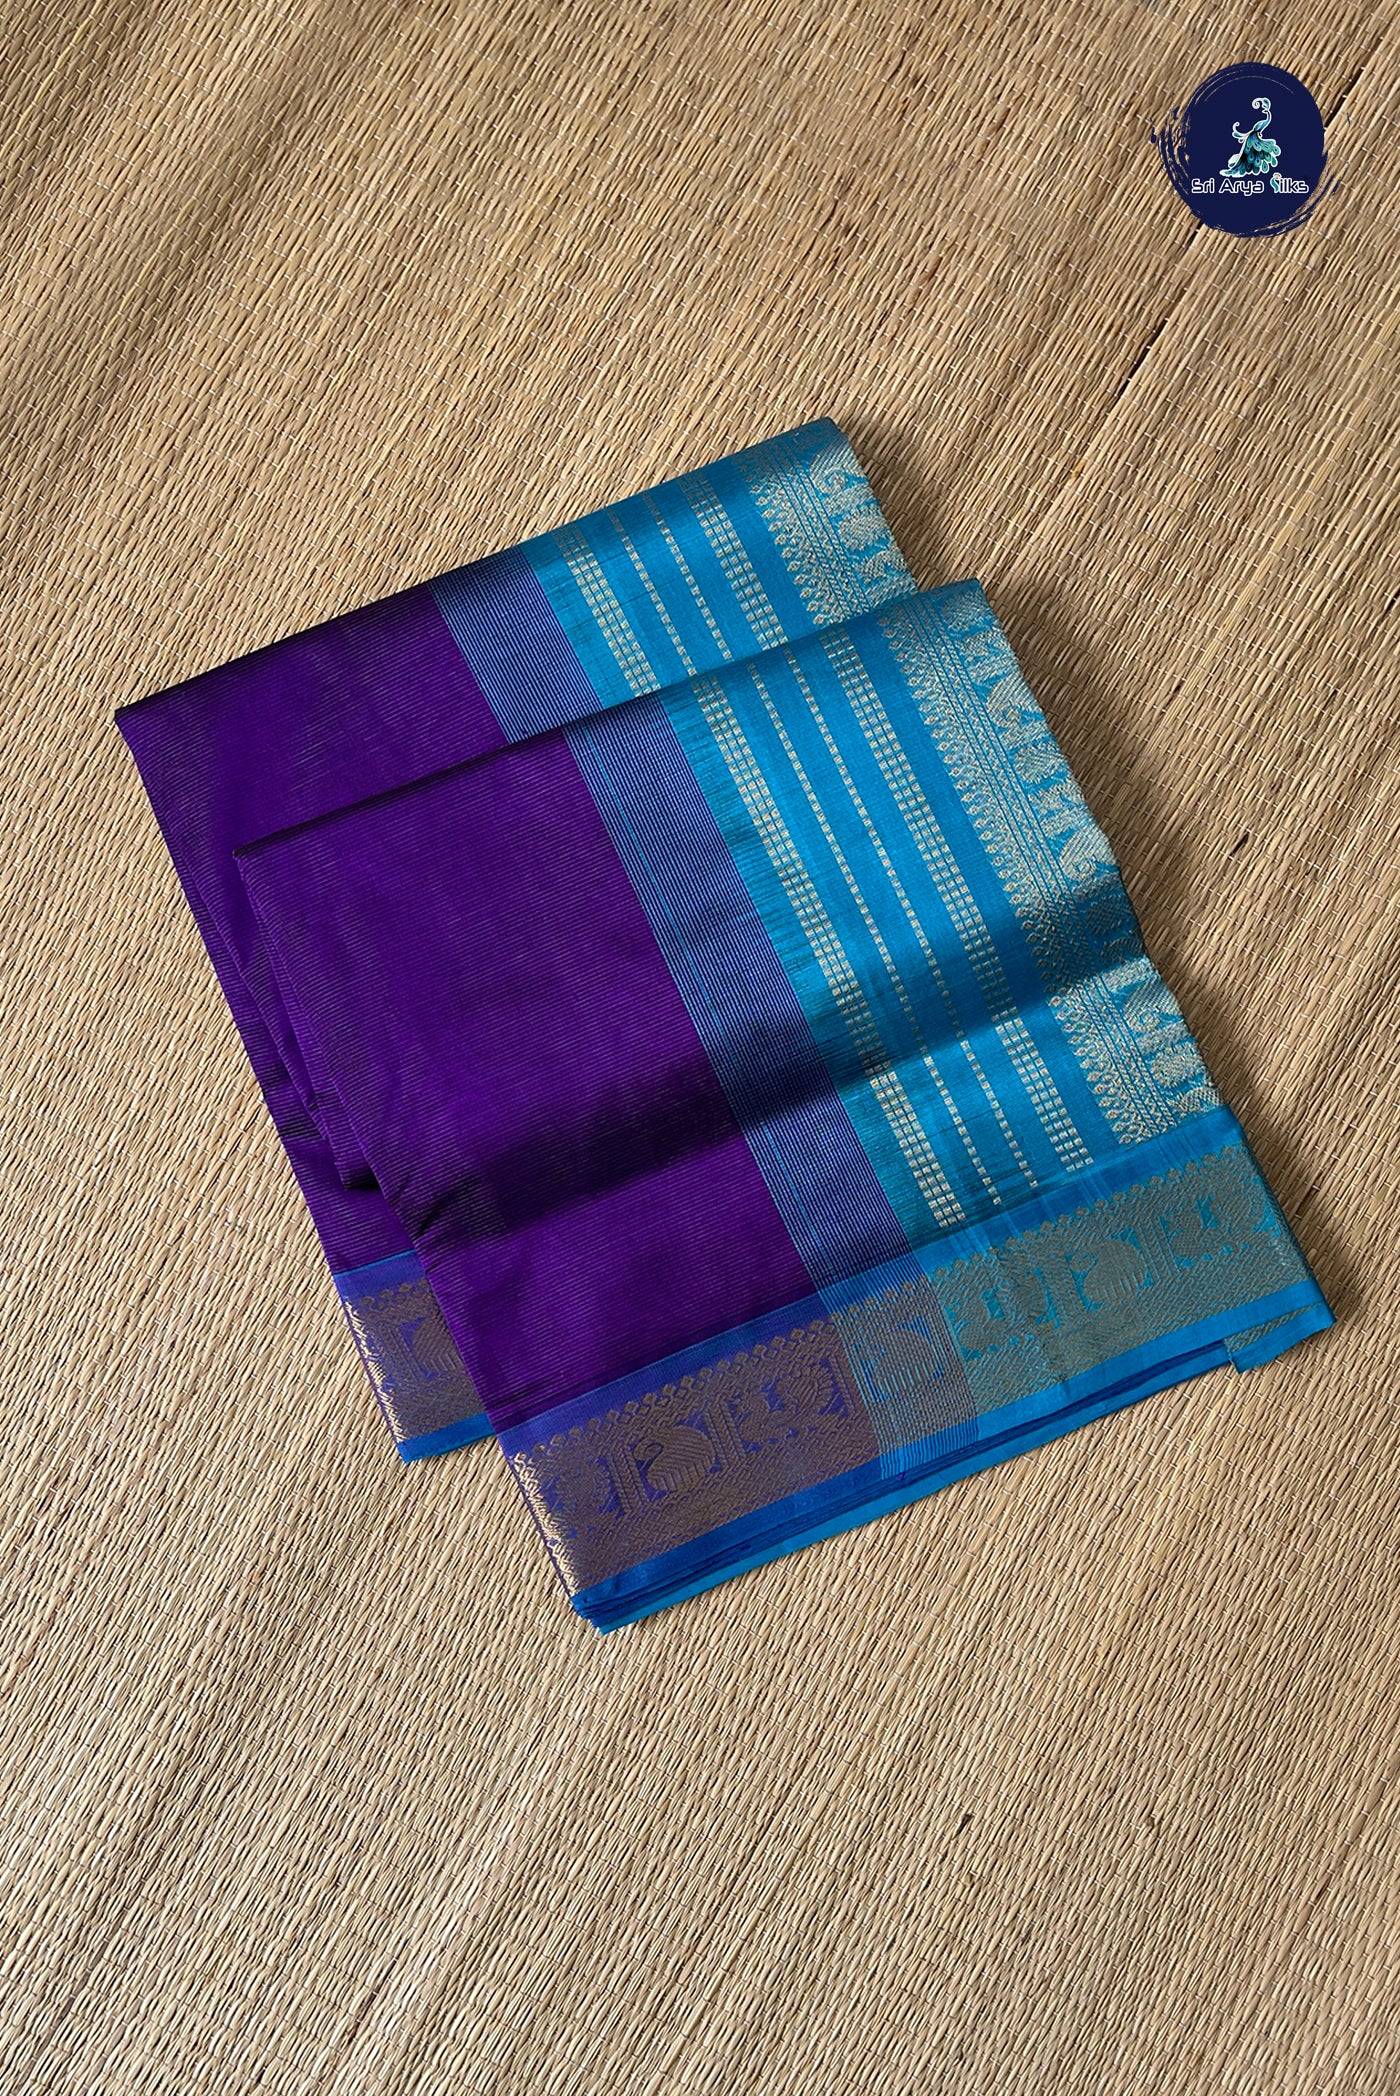 Jamun Vaira Oosi Silk Cotton Saree With Vaira Oosi Pattern